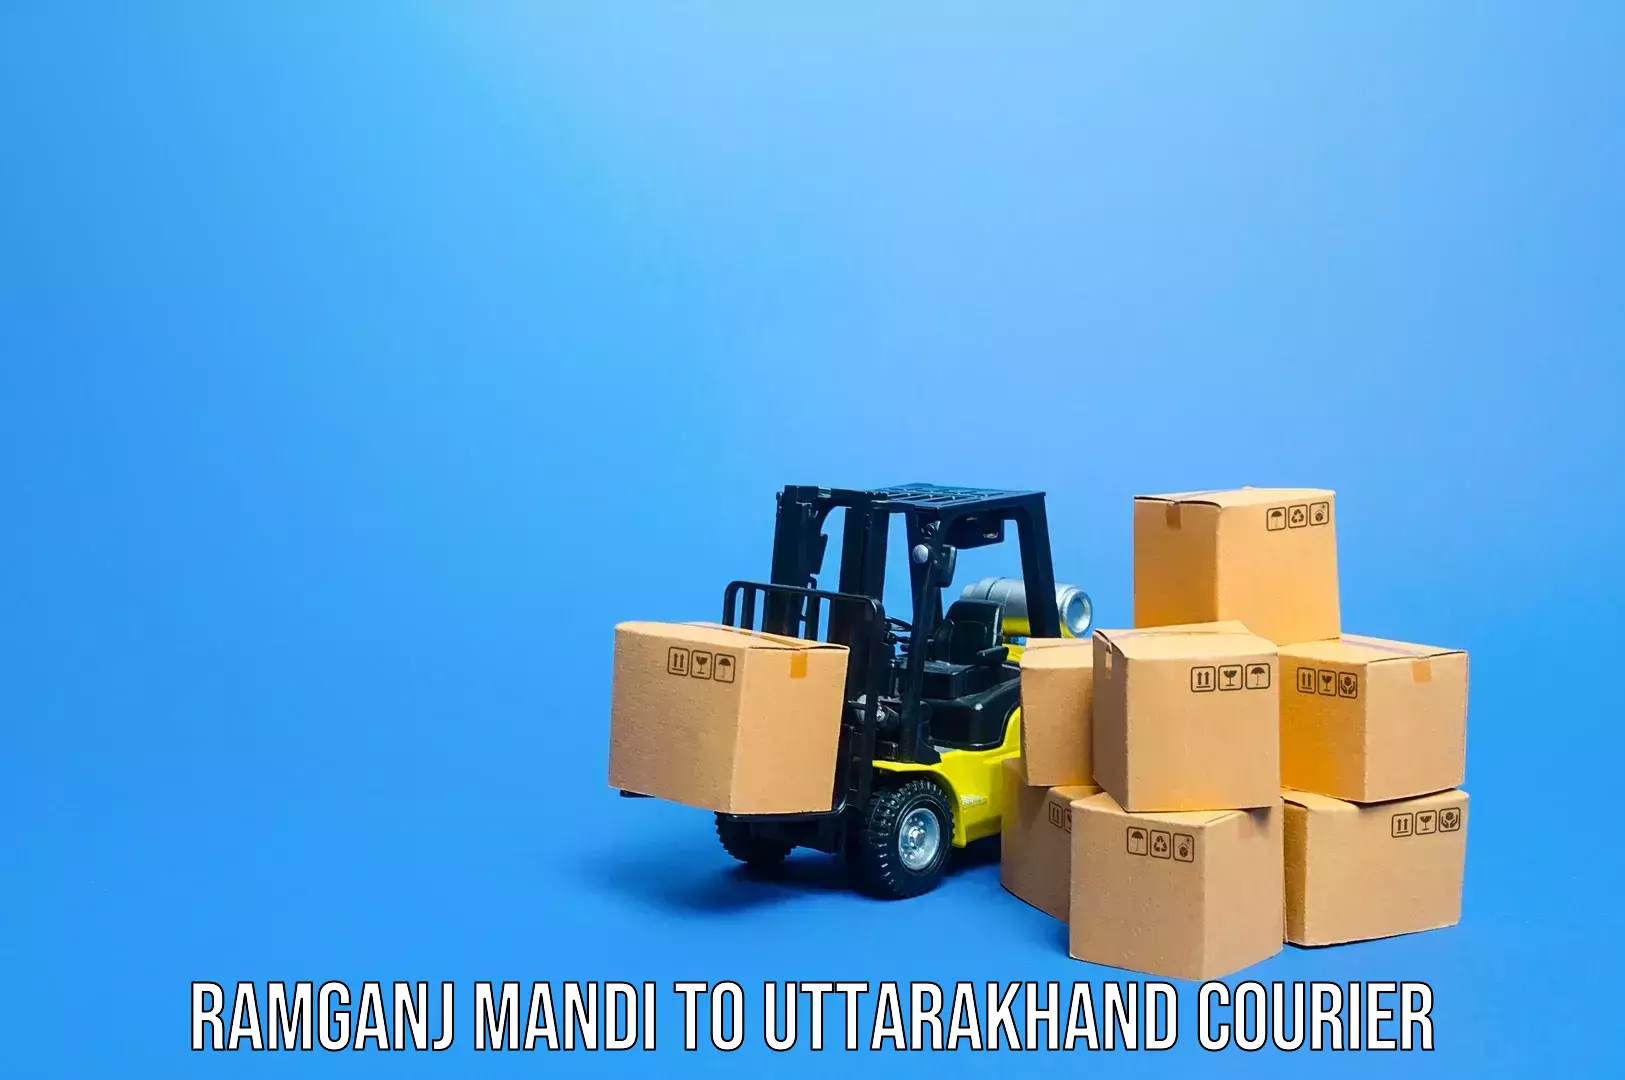 Luggage shipment tracking Ramganj Mandi to Uttarakhand